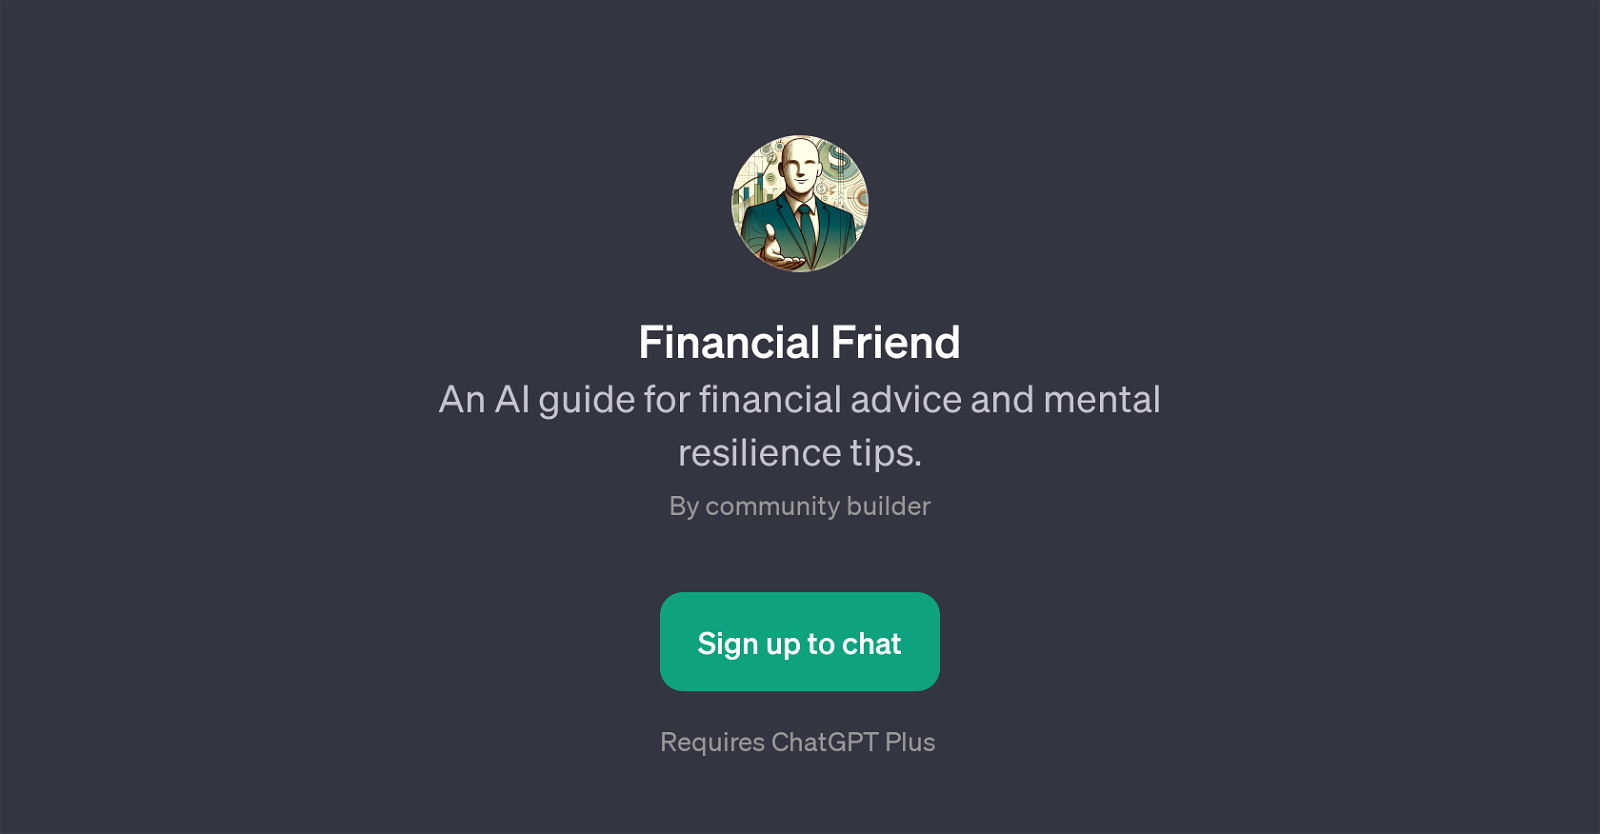 Financial Friend website